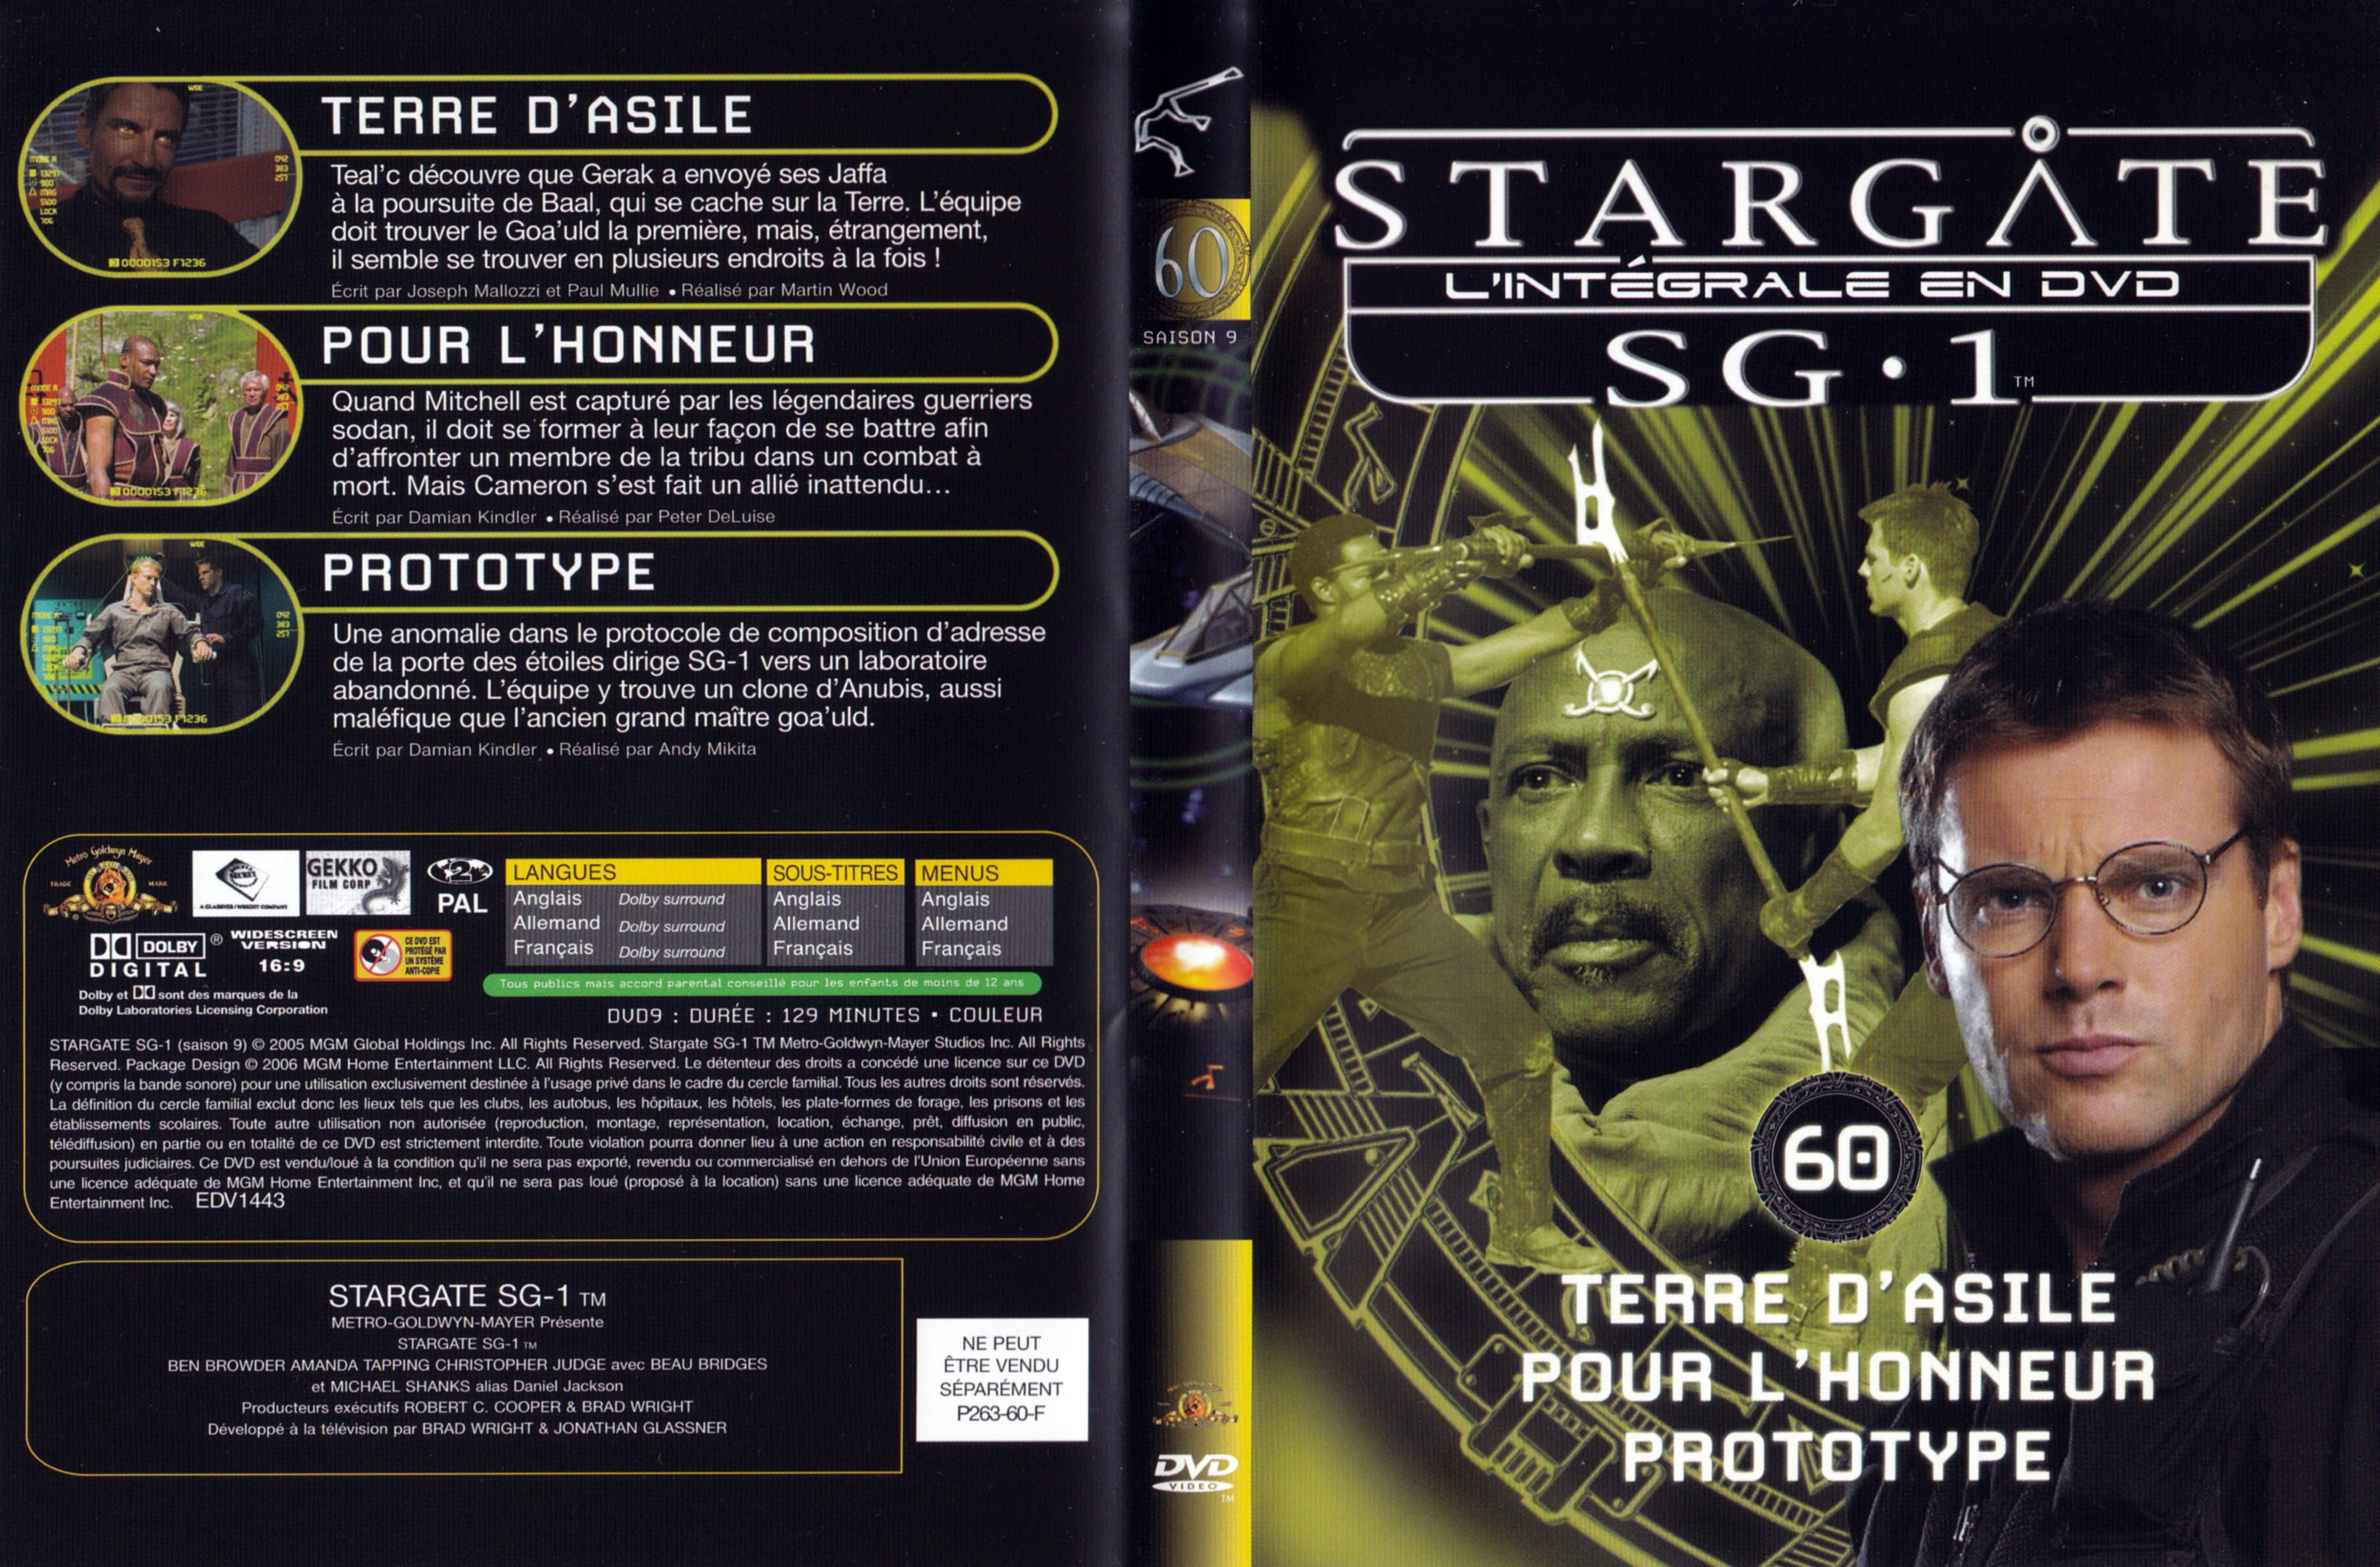 Jaquette DVD Stargate SG1 Intgrale Saison 9 vol 60